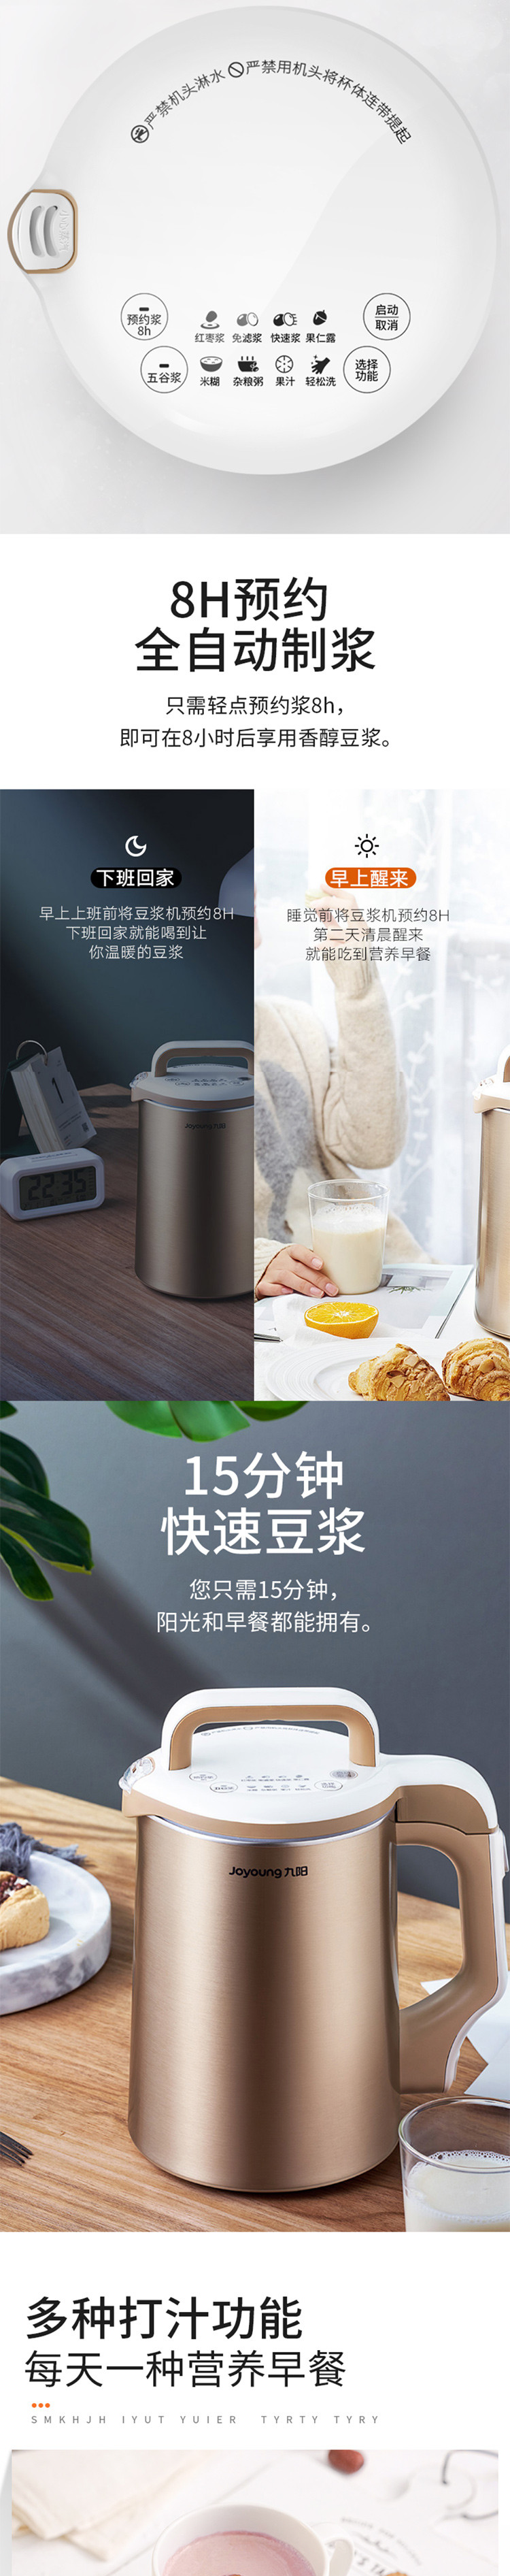 九阳/Joyoung 豆浆机多功能家用免滤辅食料理机 DJ13B-D81SG